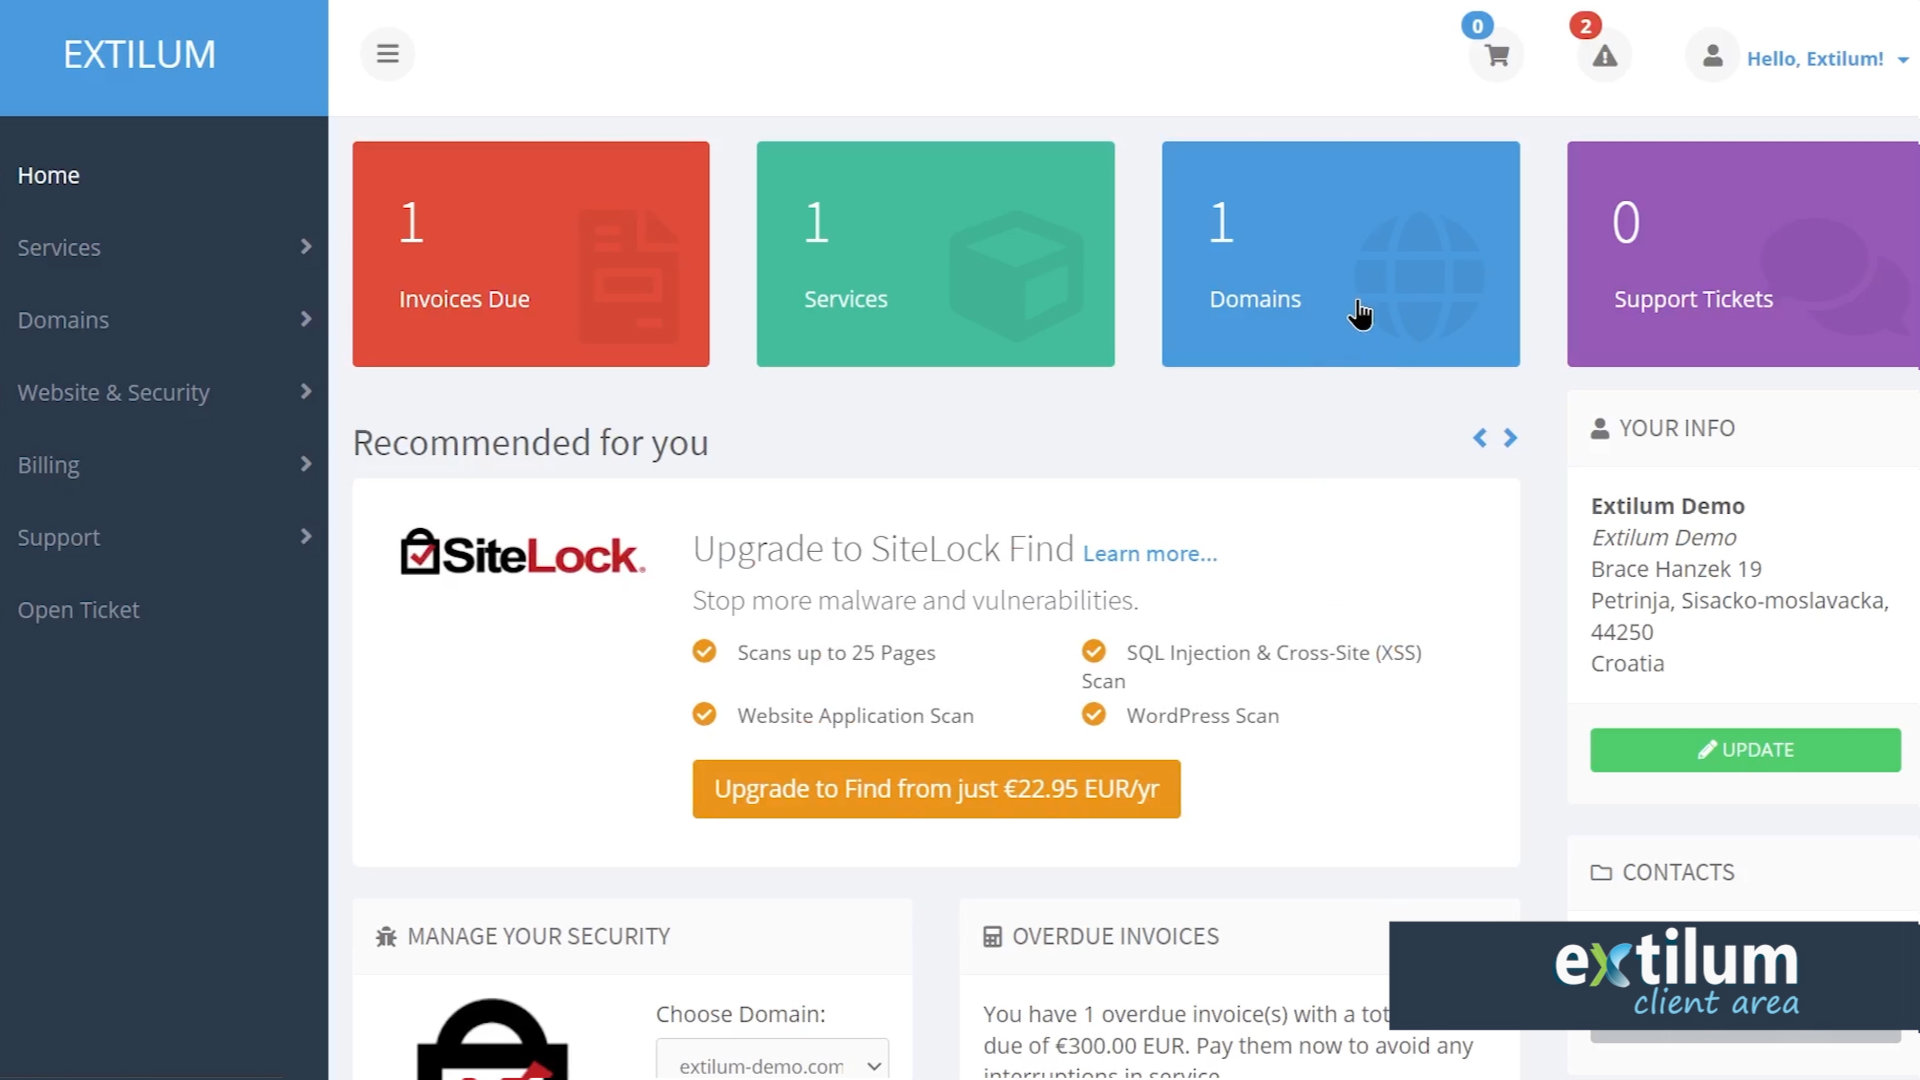 Extilum Client Area - Domain Registar Lock